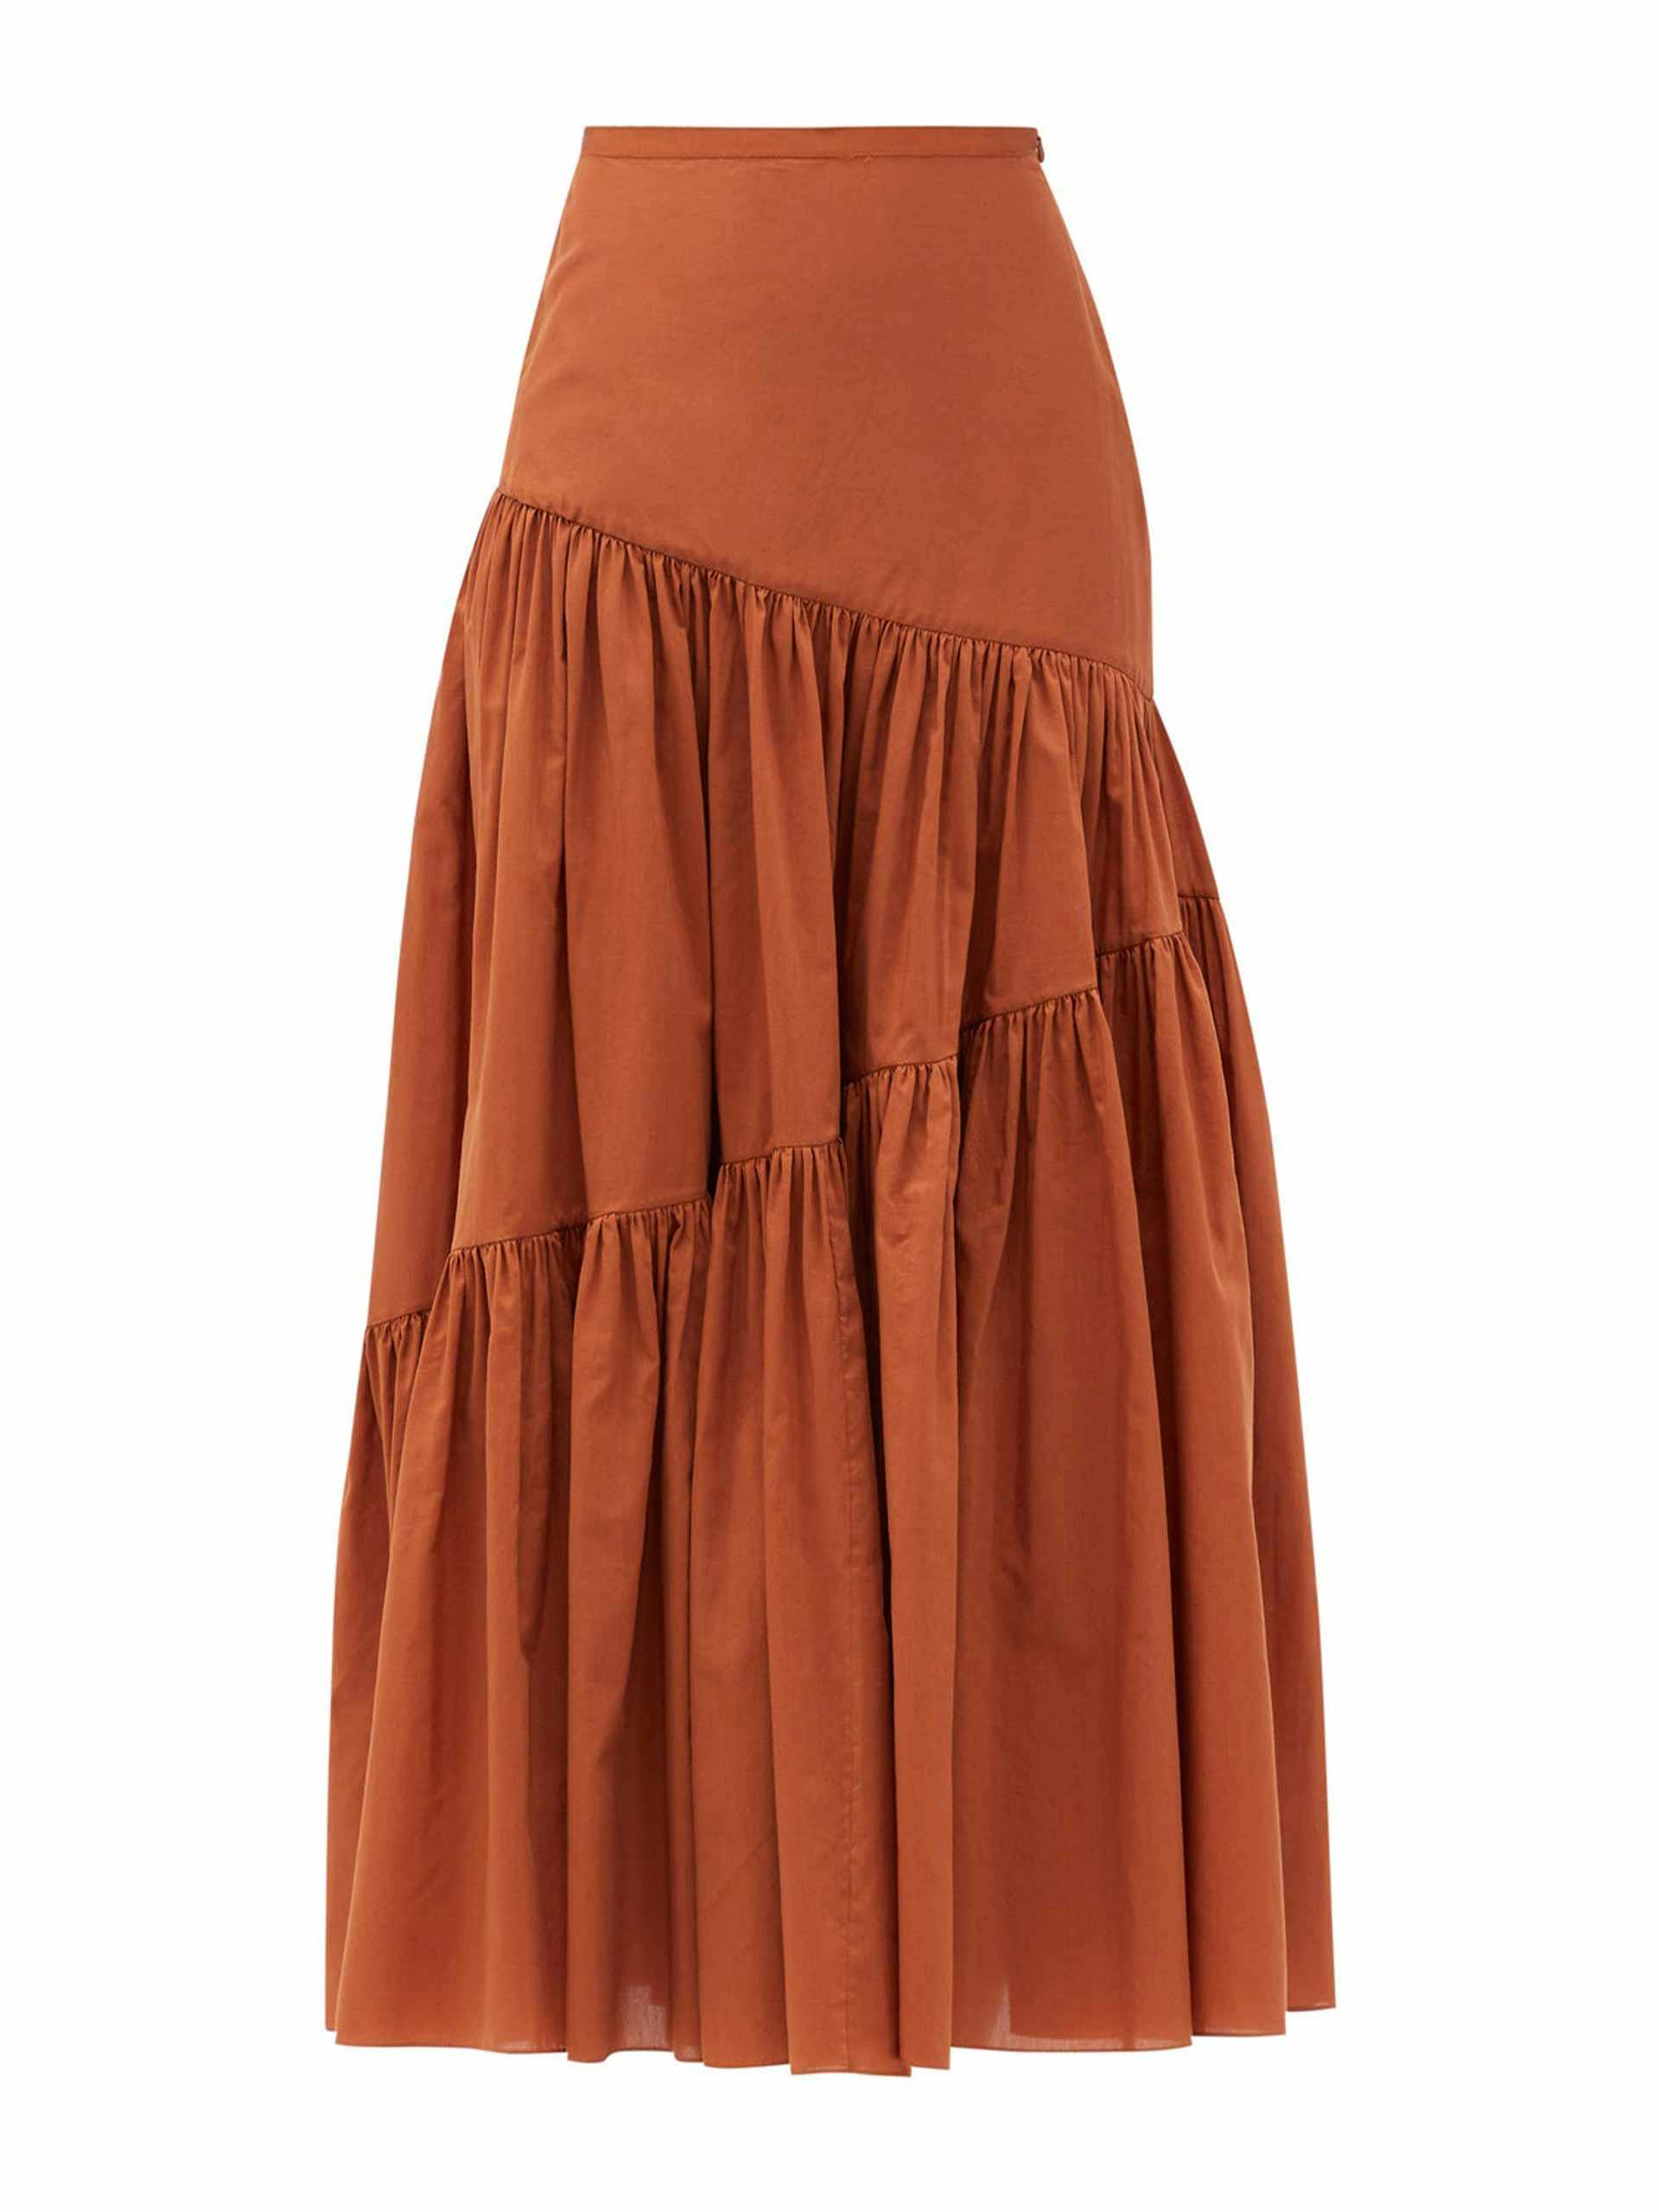 Tan brown high-rise skirt